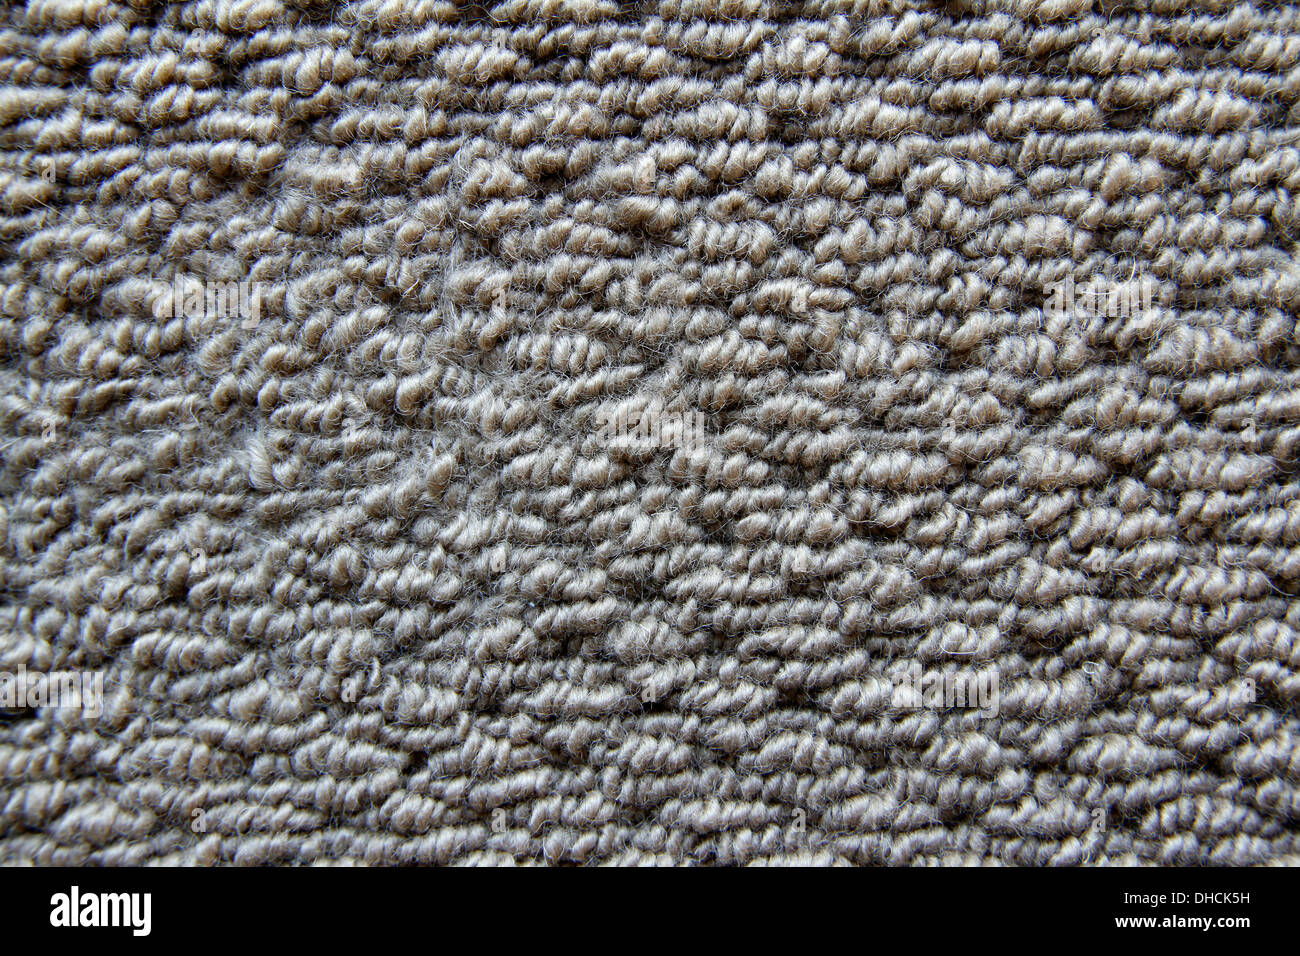 Closeup of carpet texture Stock Photo